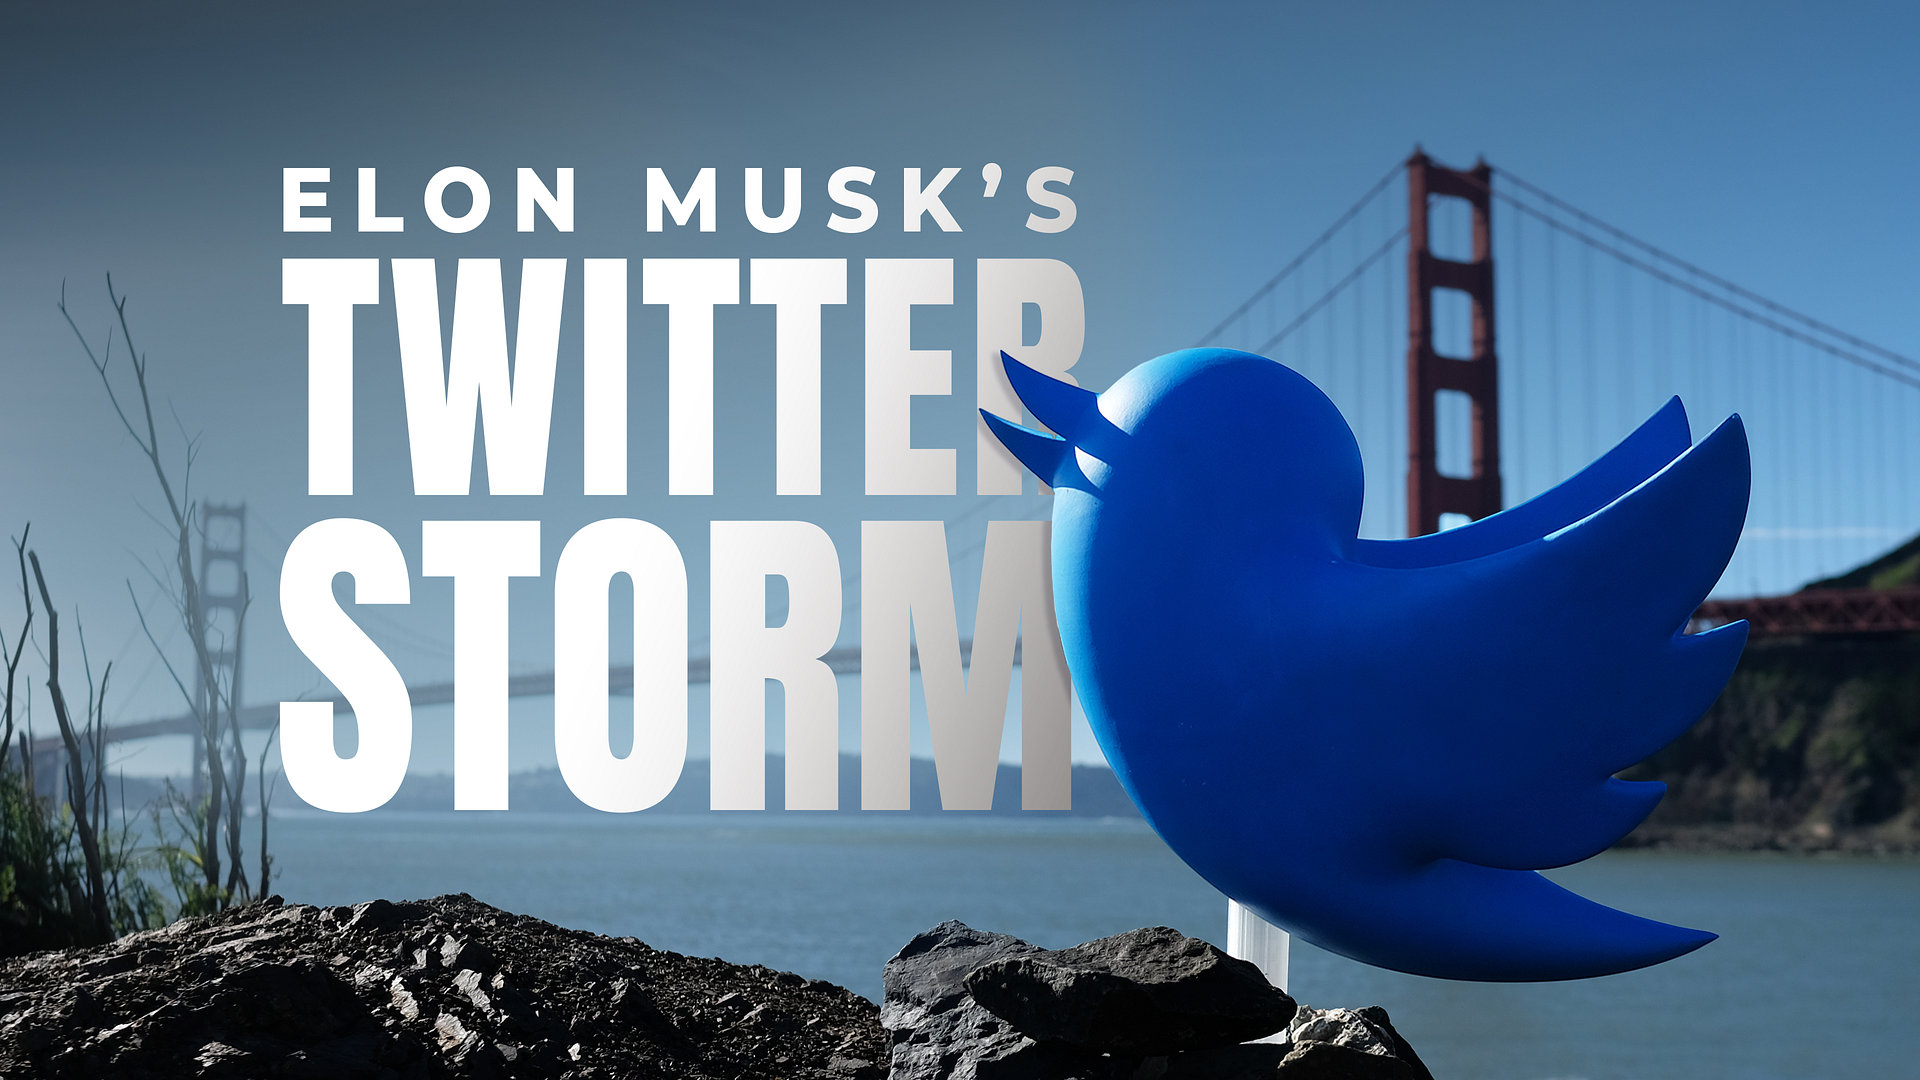 Elon Musk's Twitter Storm